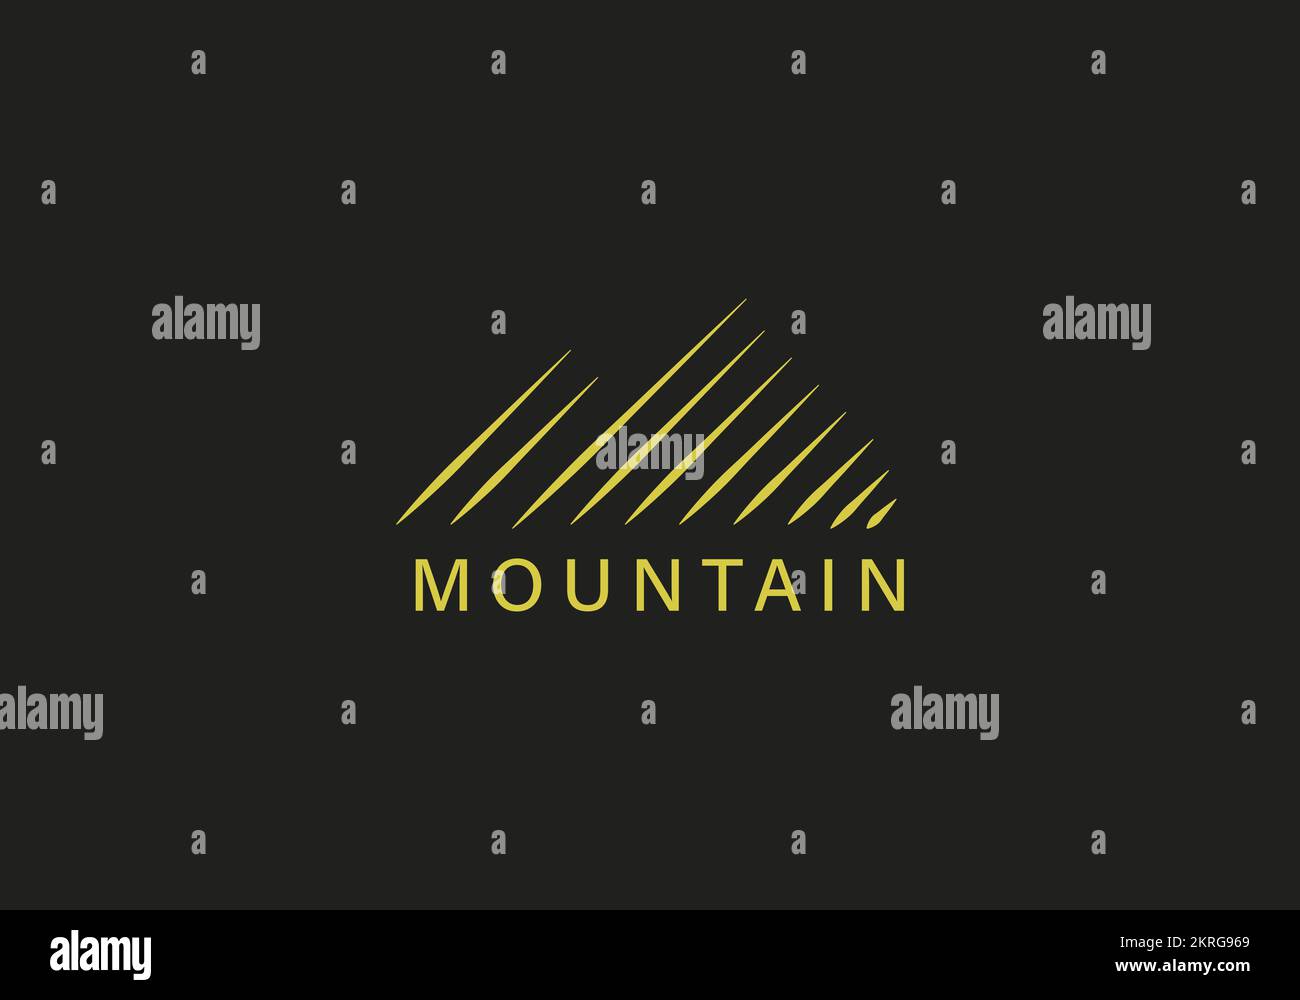 a line art icon logo of a mountain, Simple vector logo in a modern style Stock Vector